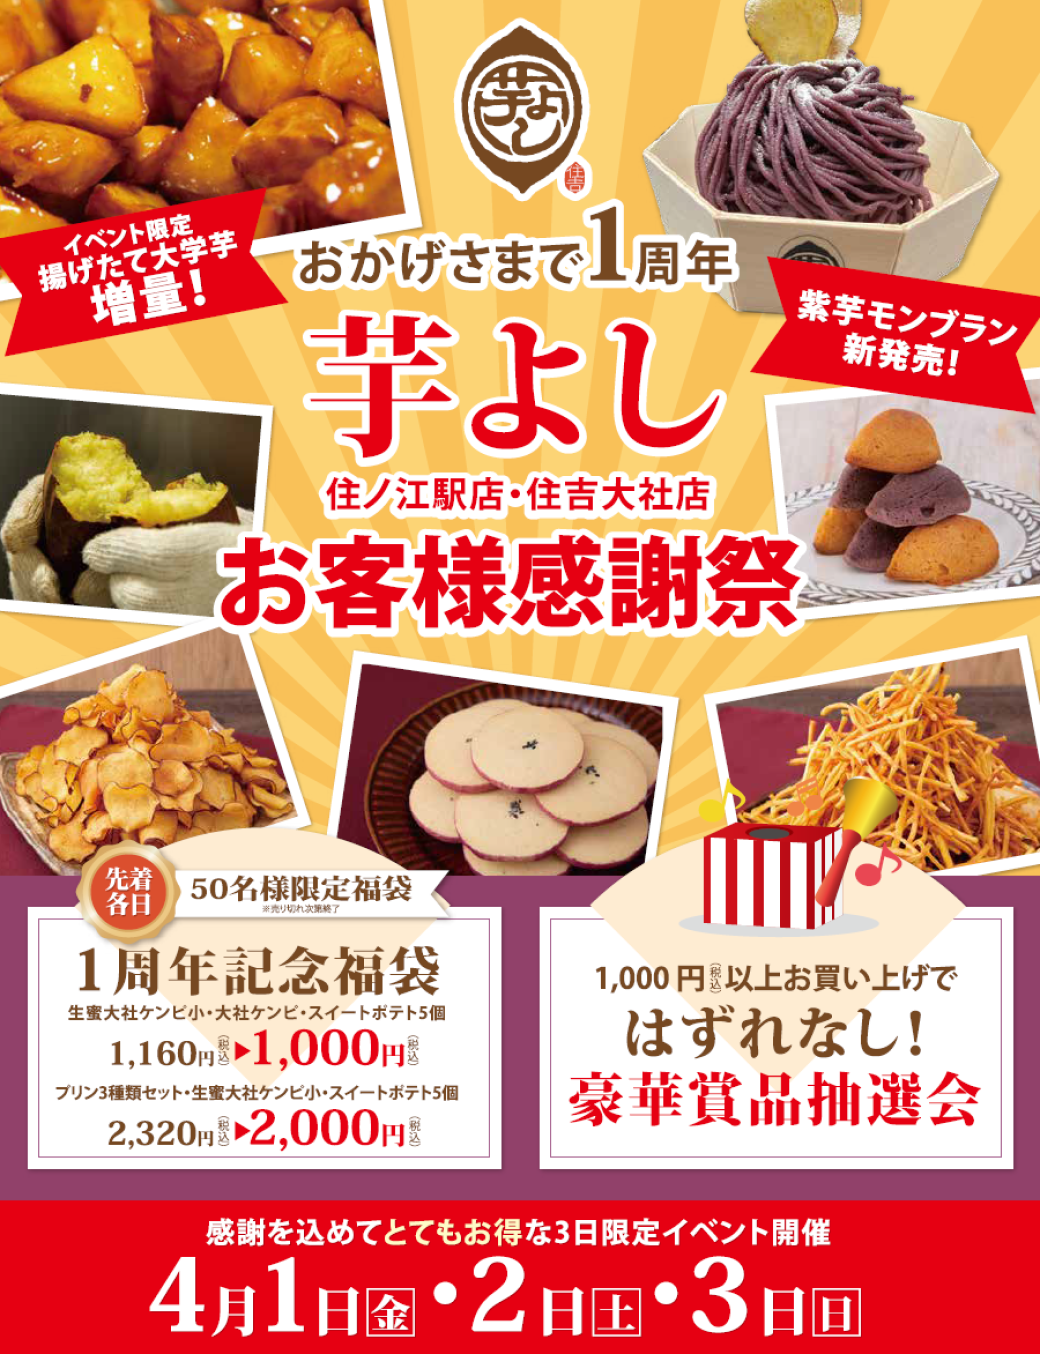 4月1日は「ほぼカニの日」　
日本記念日協会にて4月1日を「ほぼカニの日」に制定　
～エイプリルフールは「ほぼカニ」で楽しい食卓を～